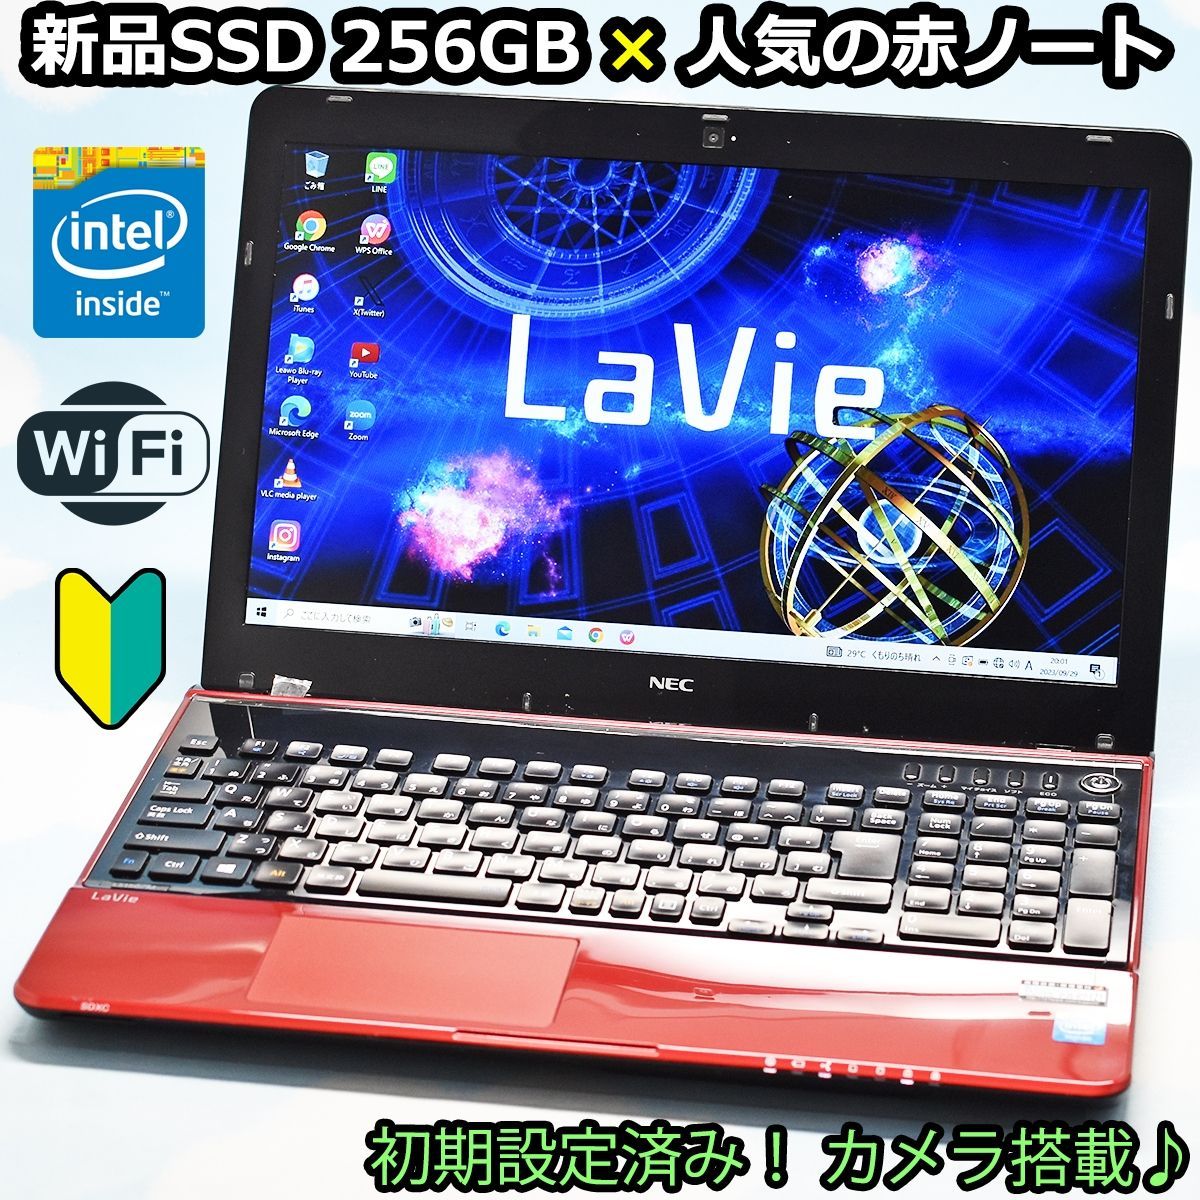 新品SSD 256GB、カメラ、WiFi 搭載♪ NEC LaVie リモート 大特価